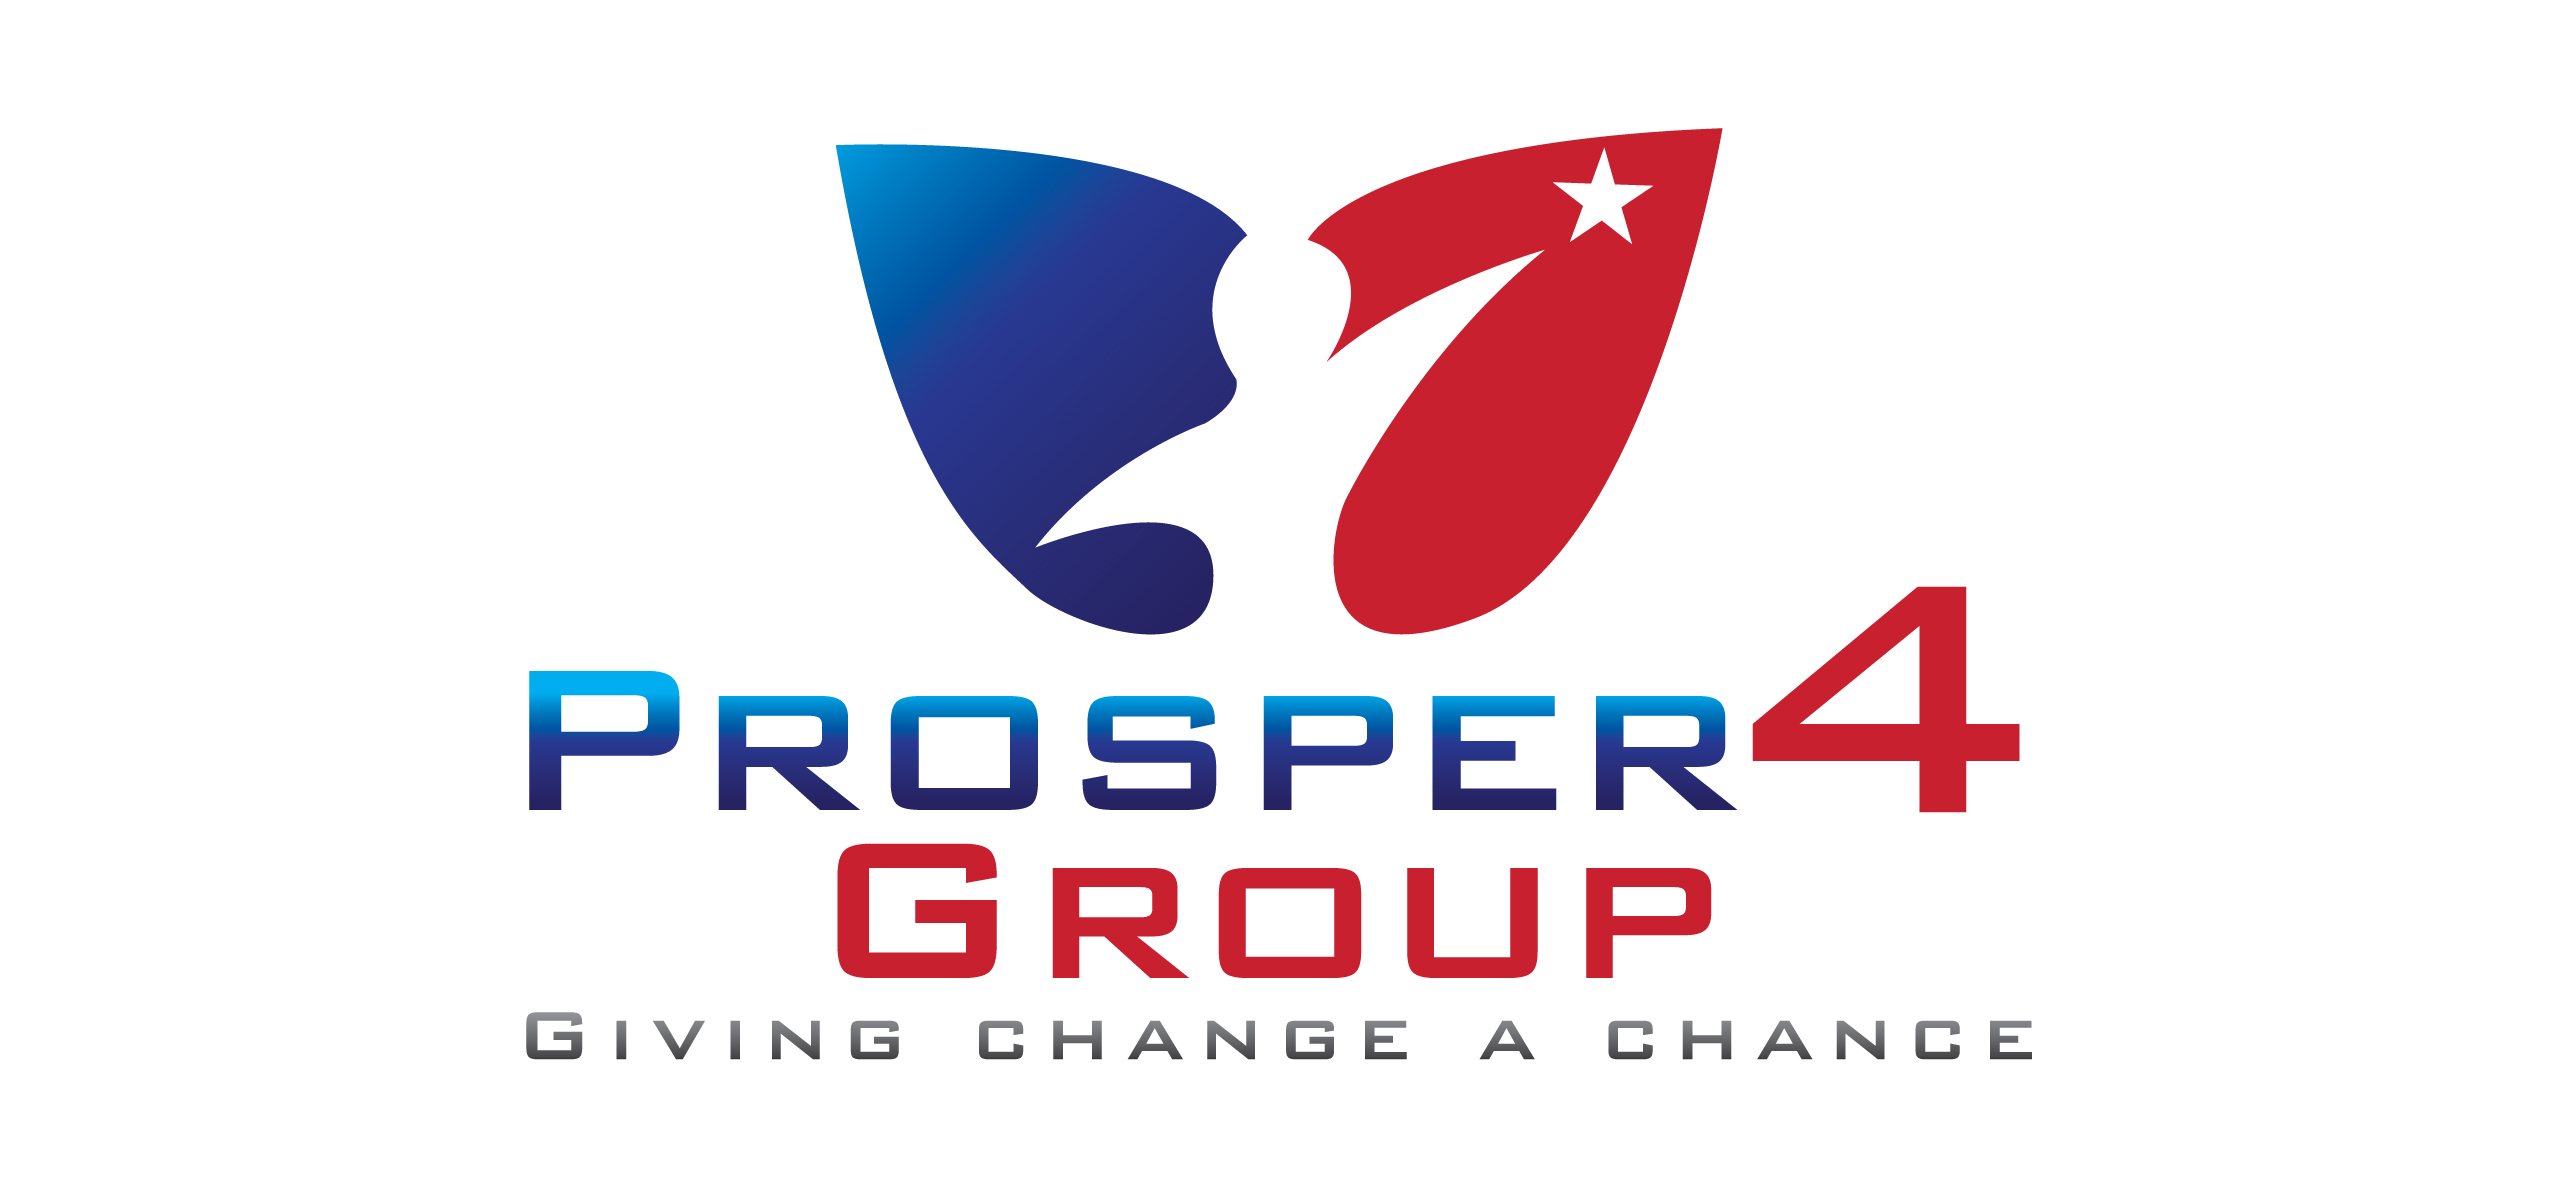 Prosper 4 Group